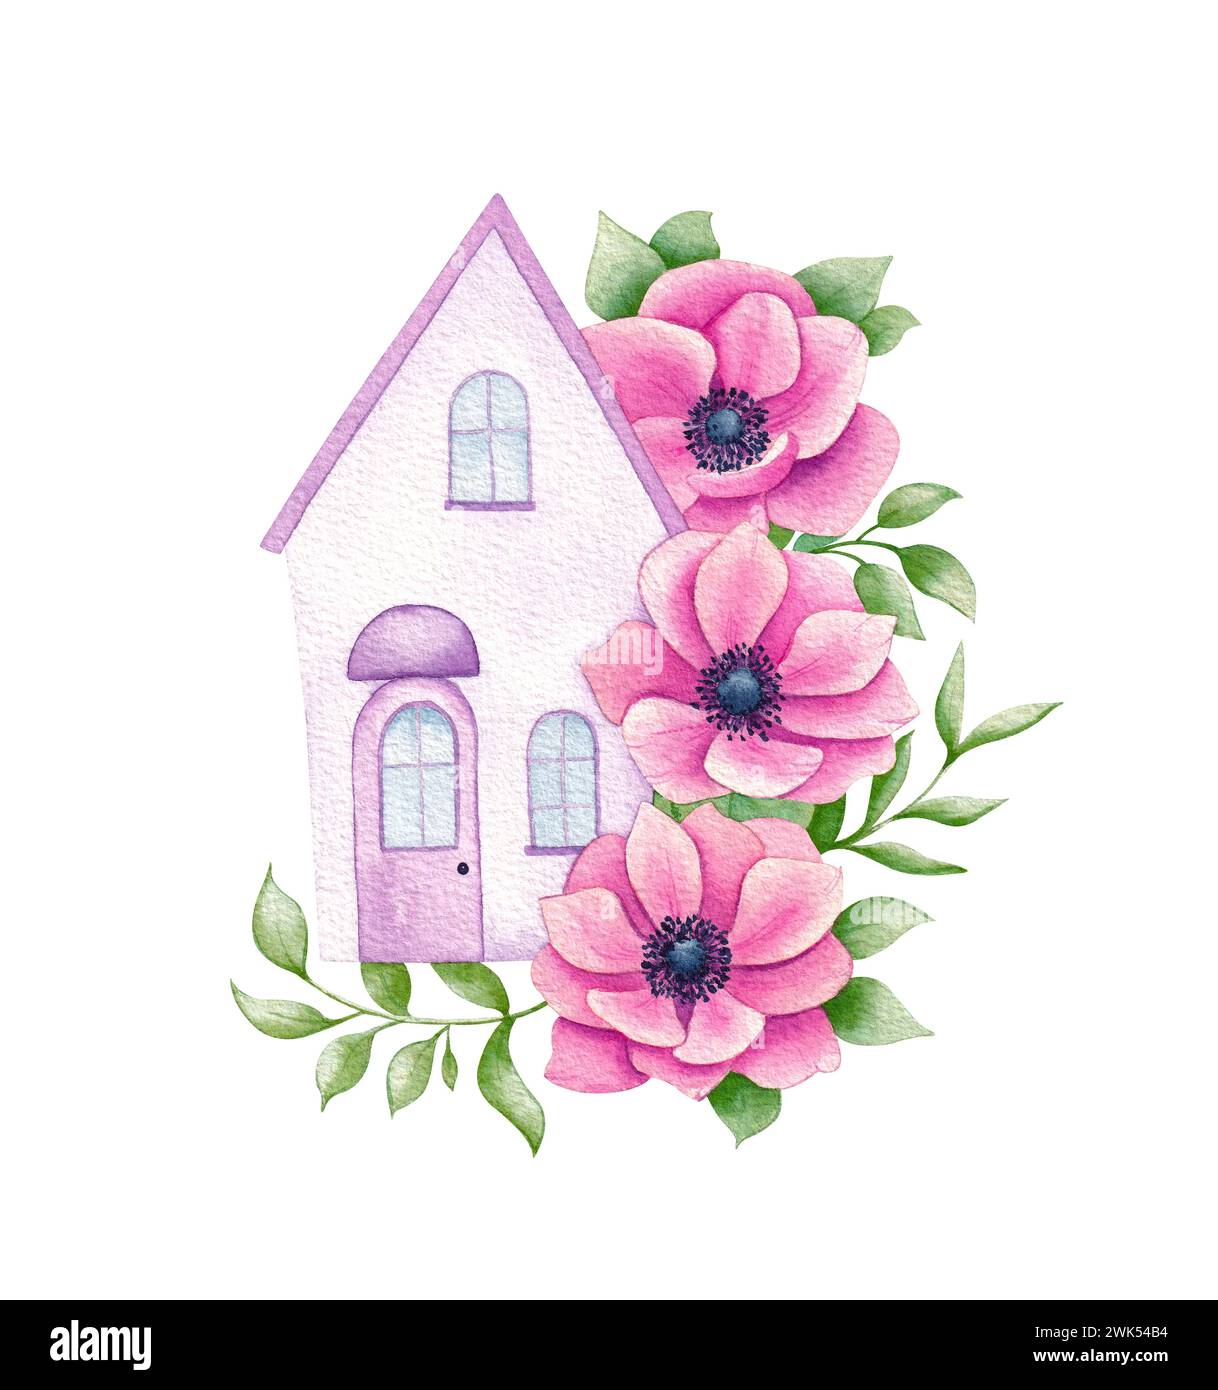 Maison aquarelle, décorée de feuilles et de fleurs. Illustration dessinée à la main sur fond blanc. Banque D'Images